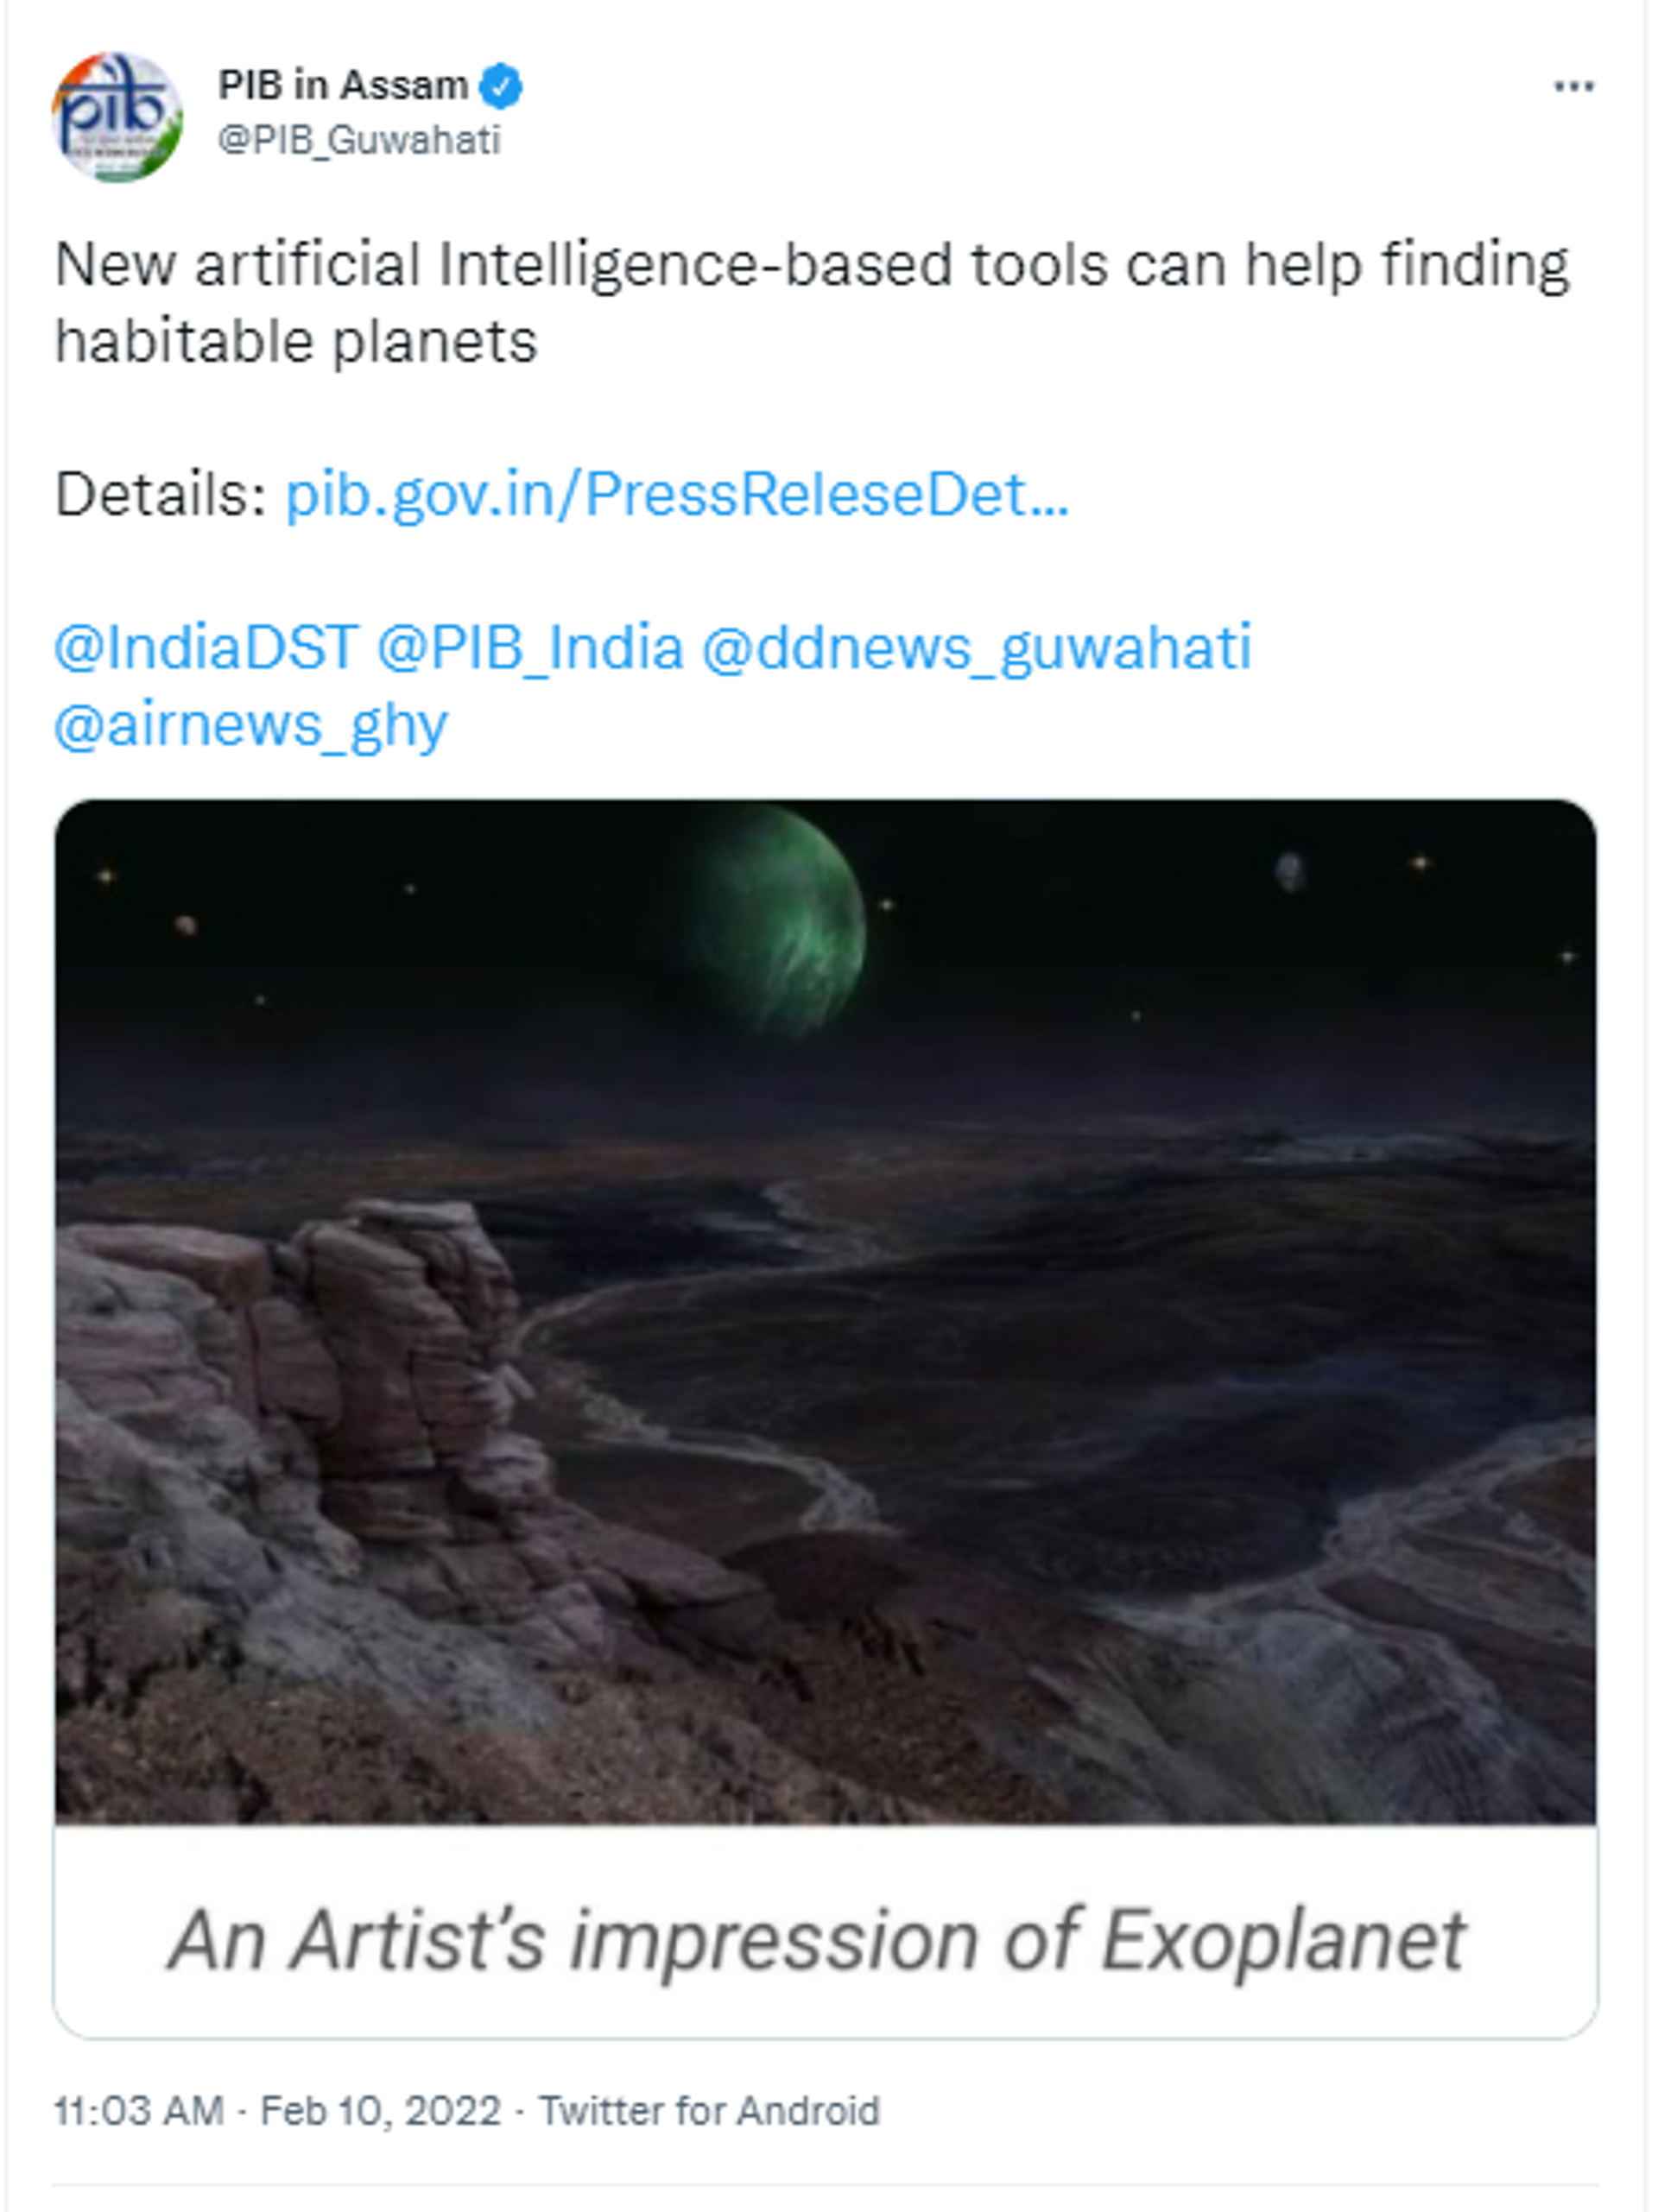 Habitable planets discovered - Sputnik International, 1920, 10.02.2022